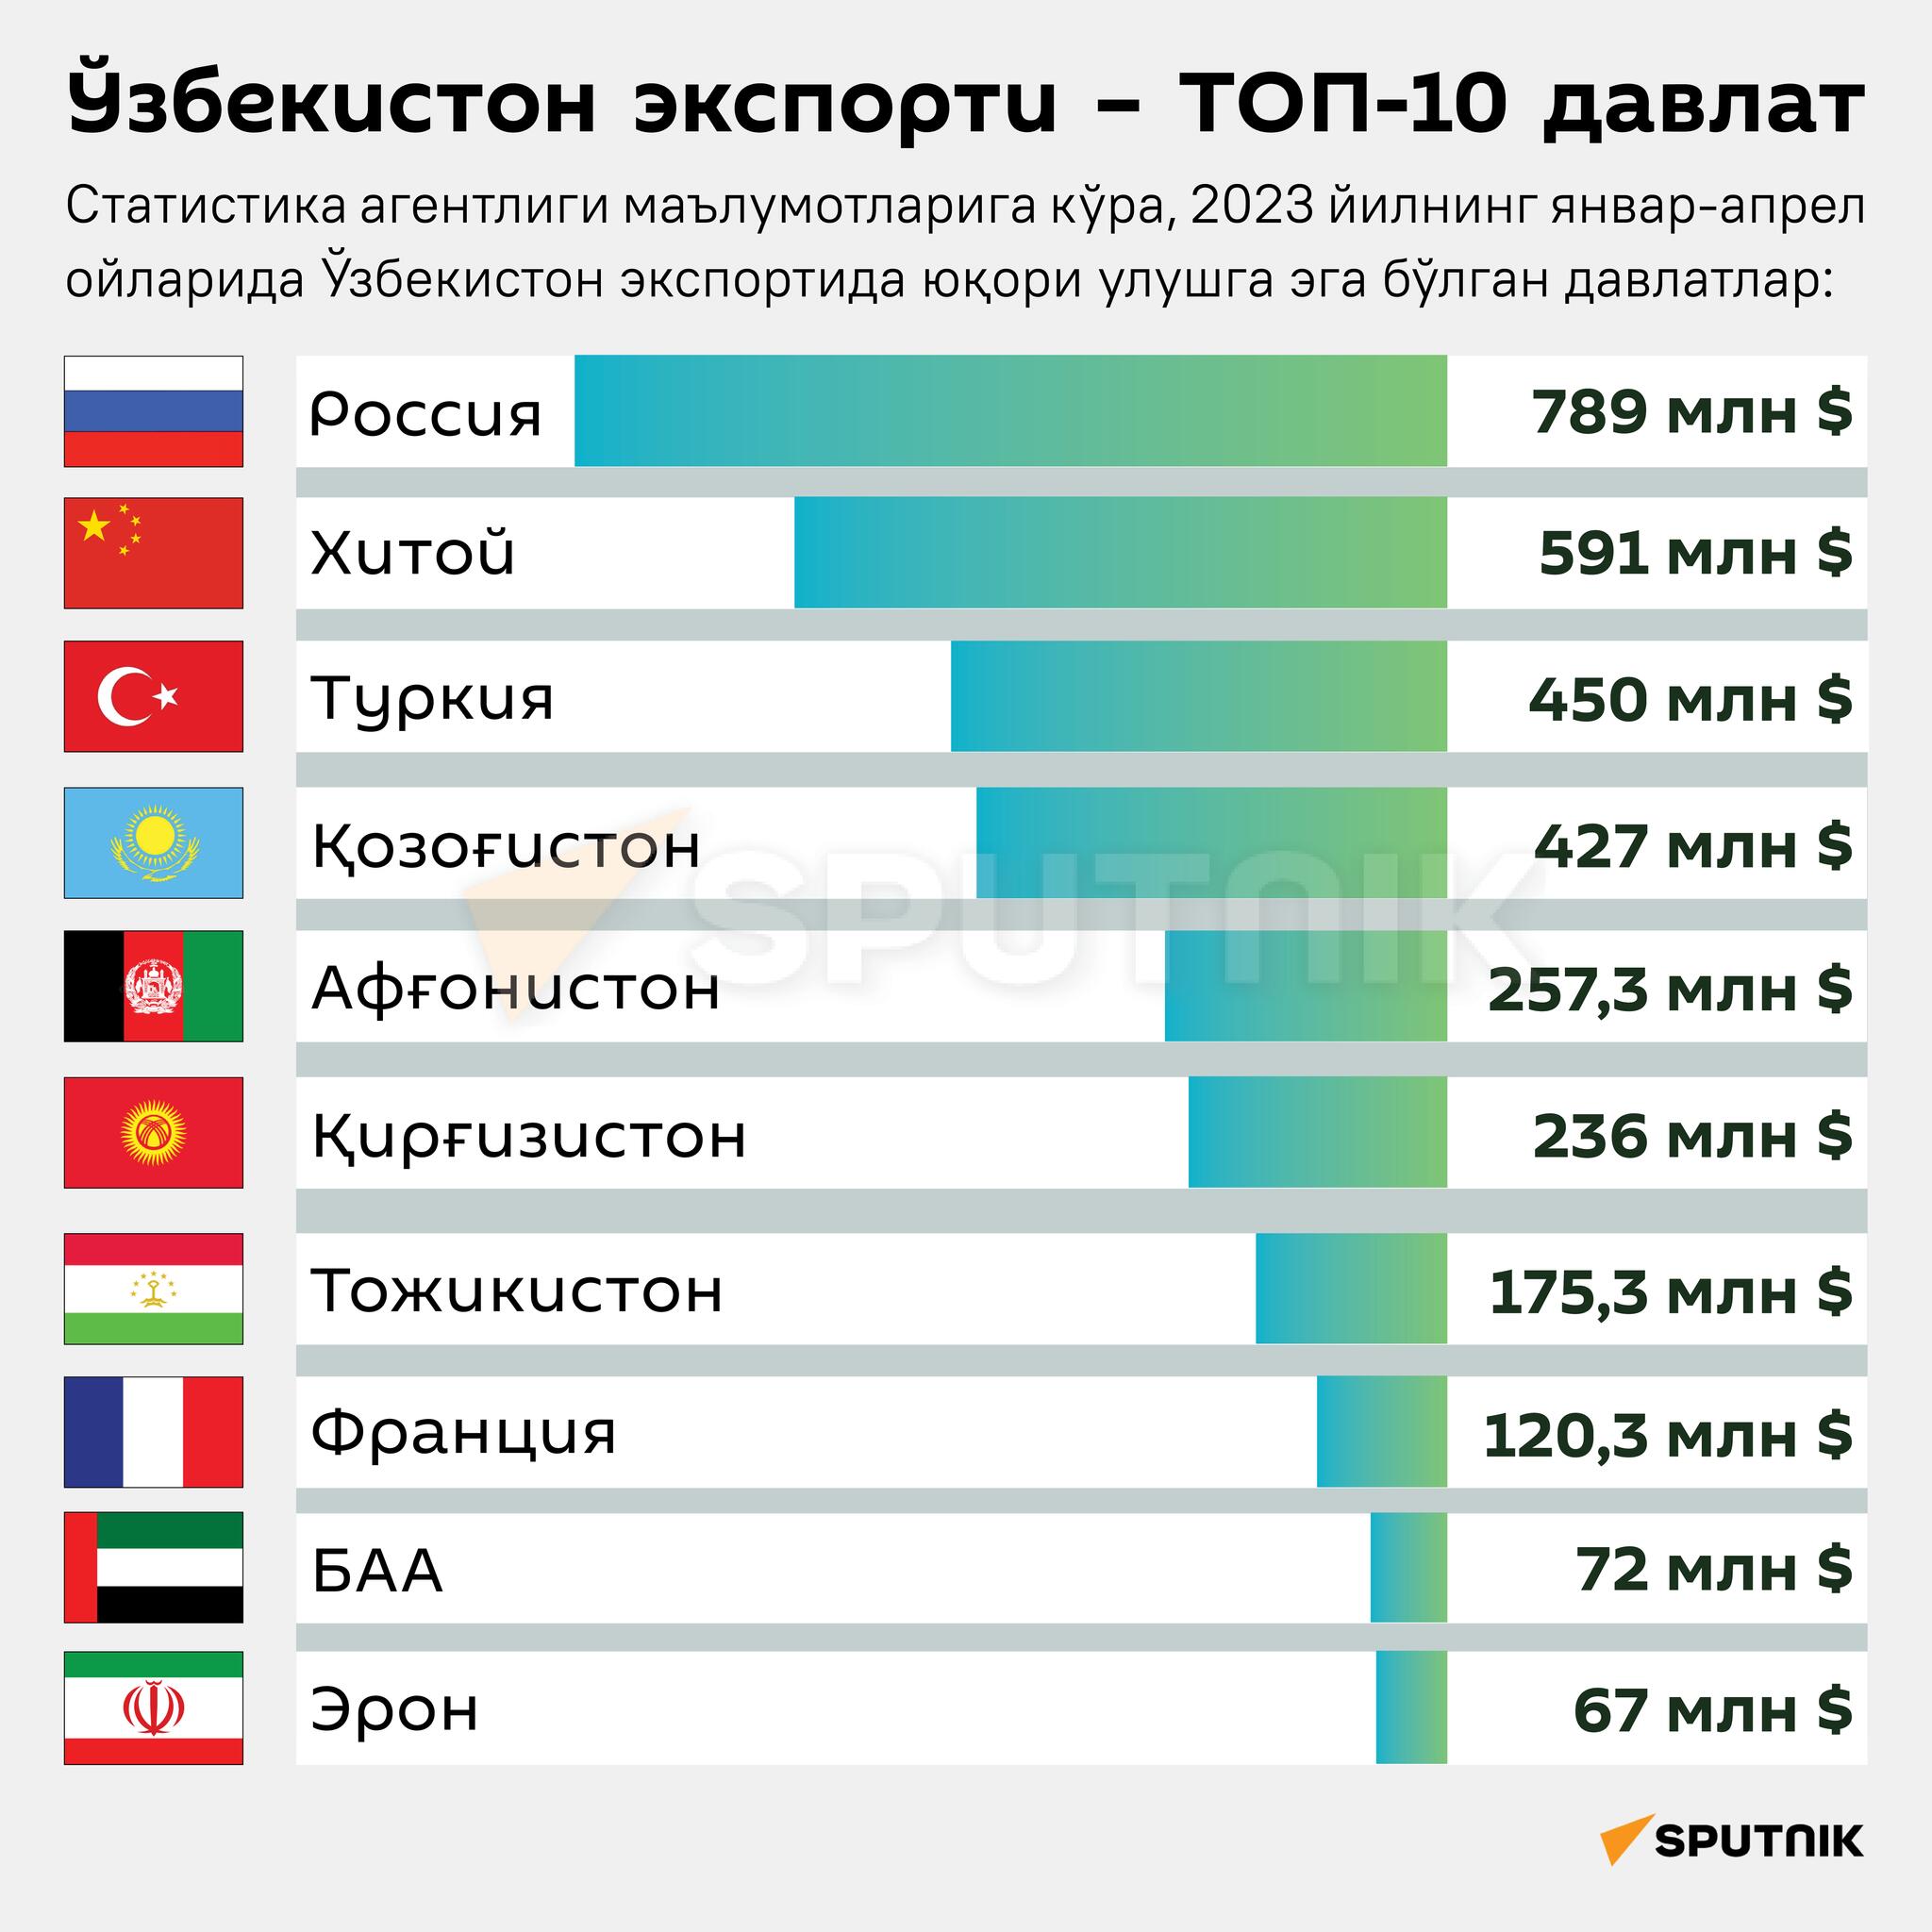 Экспорт Узбекистана - ТОП-10 стран за январь-апрель 2023 года инфографика узб - Sputnik Ўзбекистон